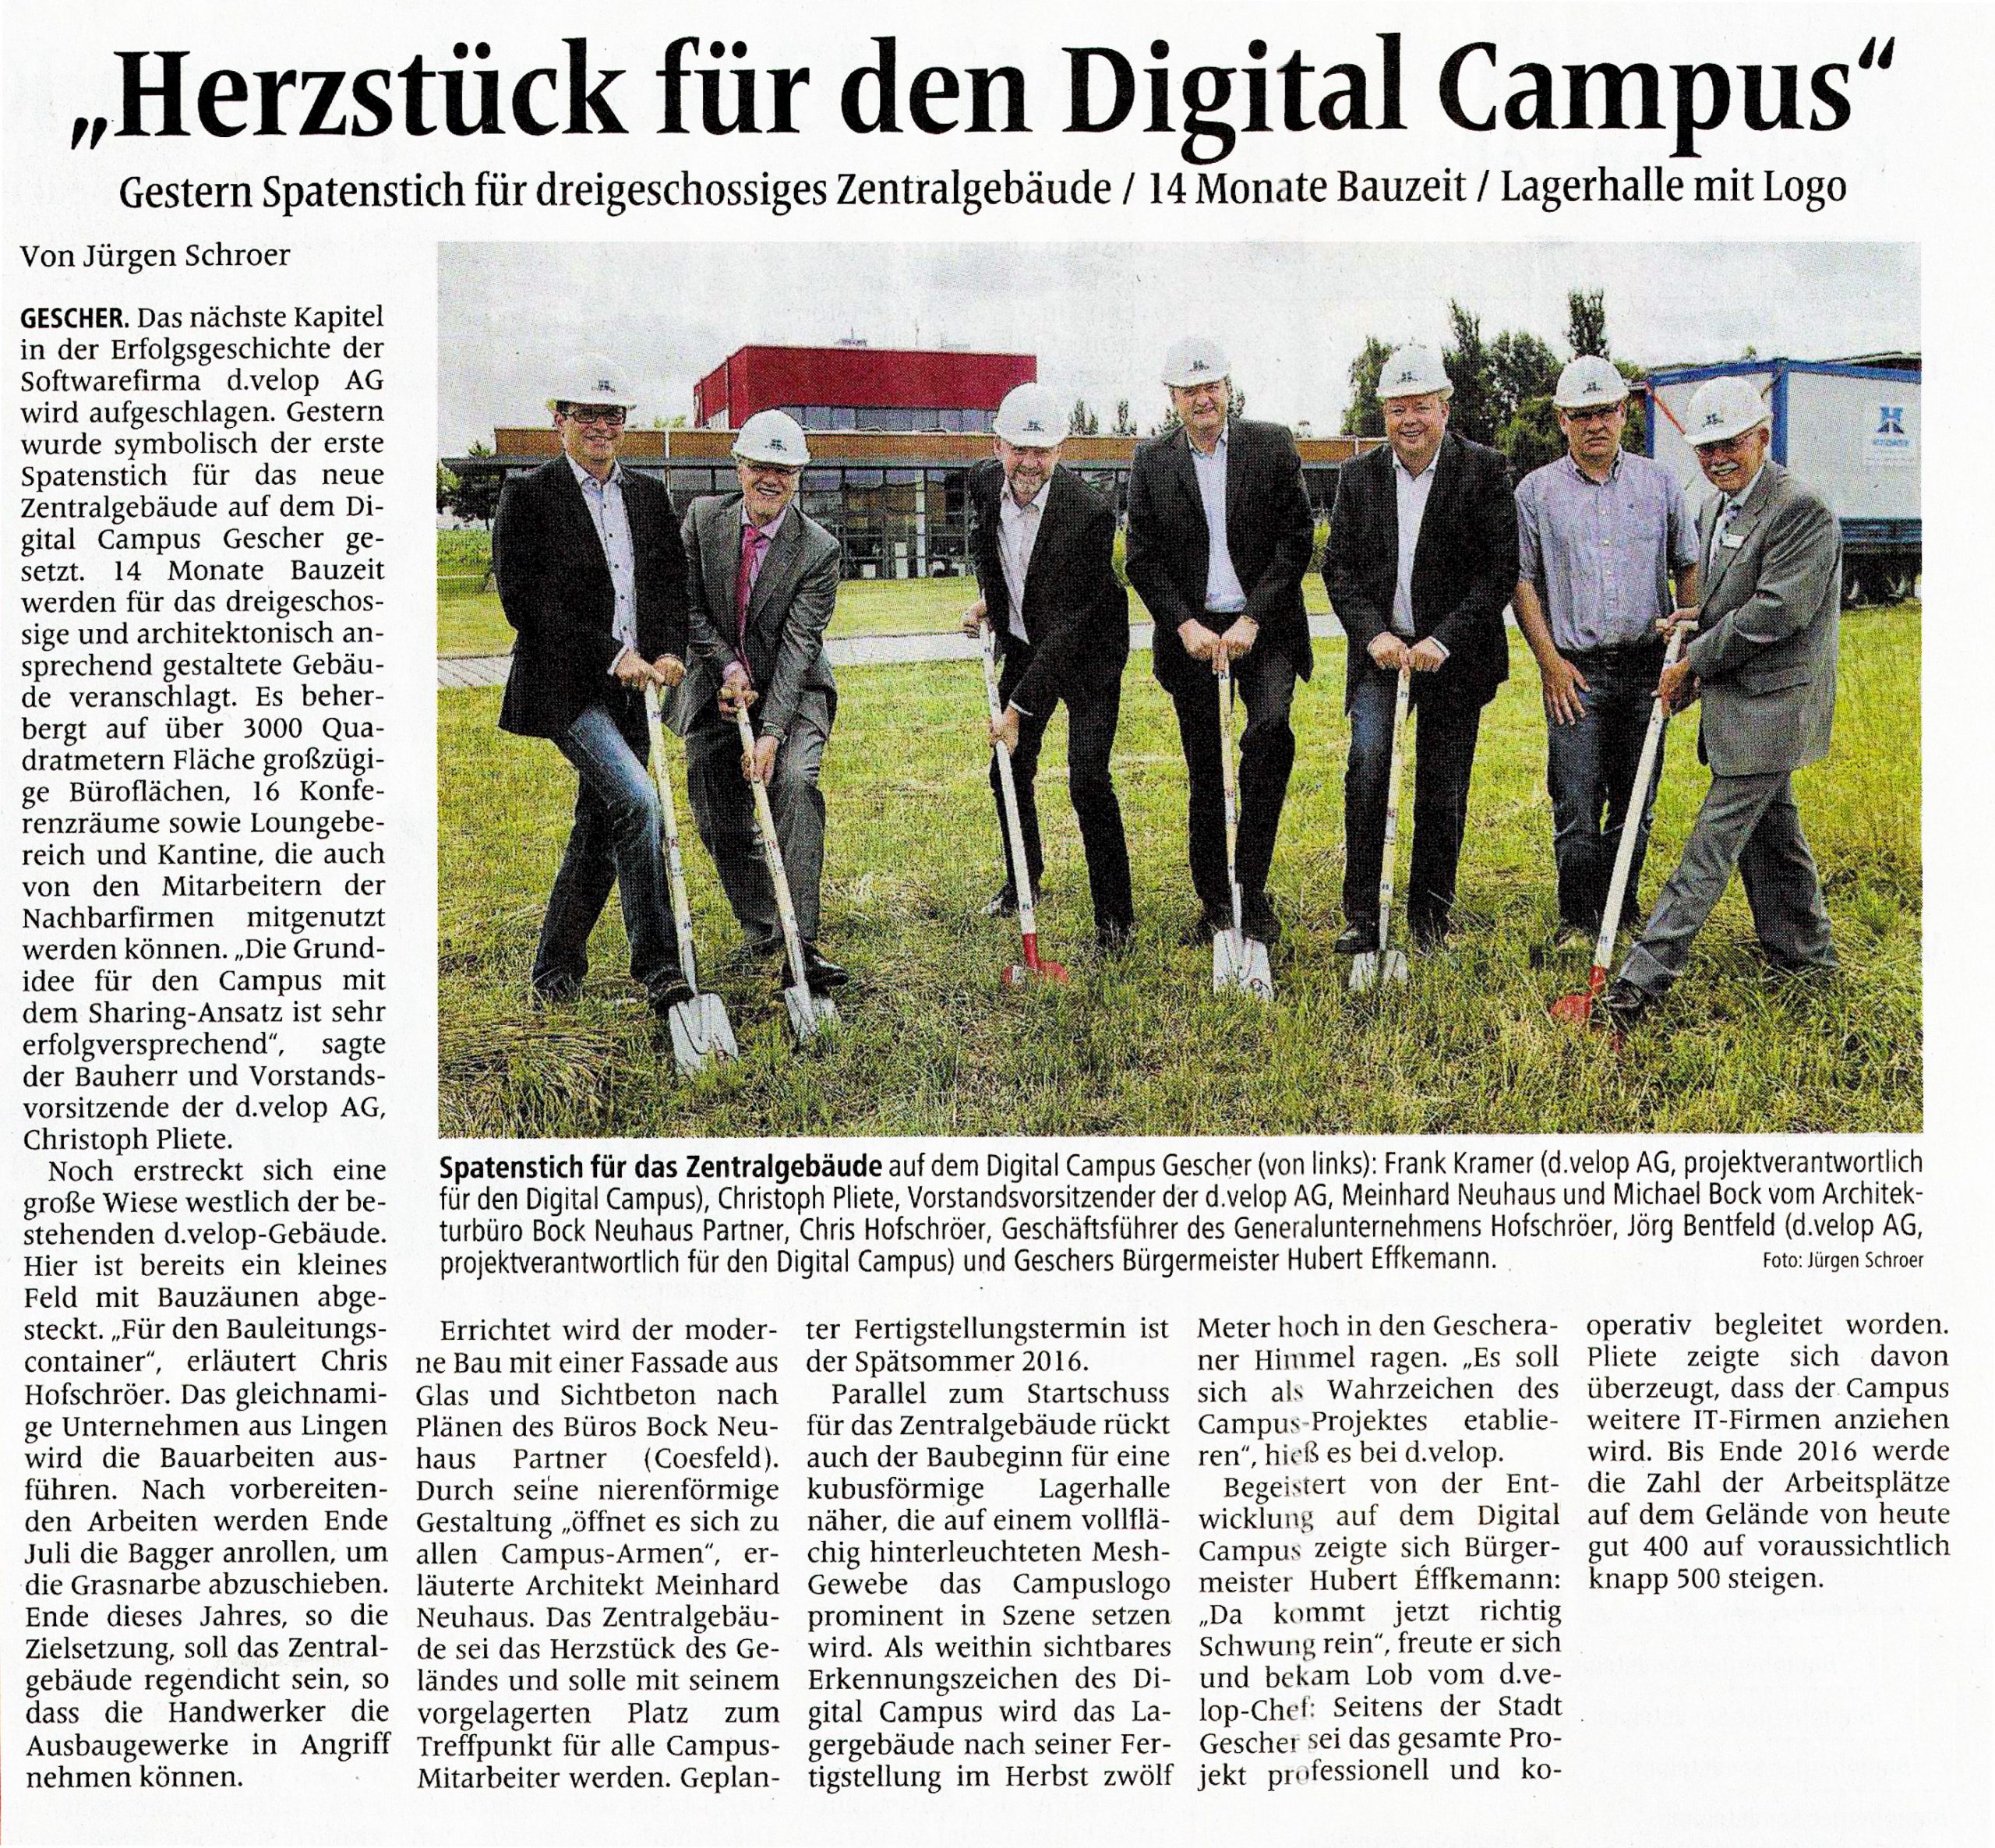 Spatenstich am digital campus, Gescher